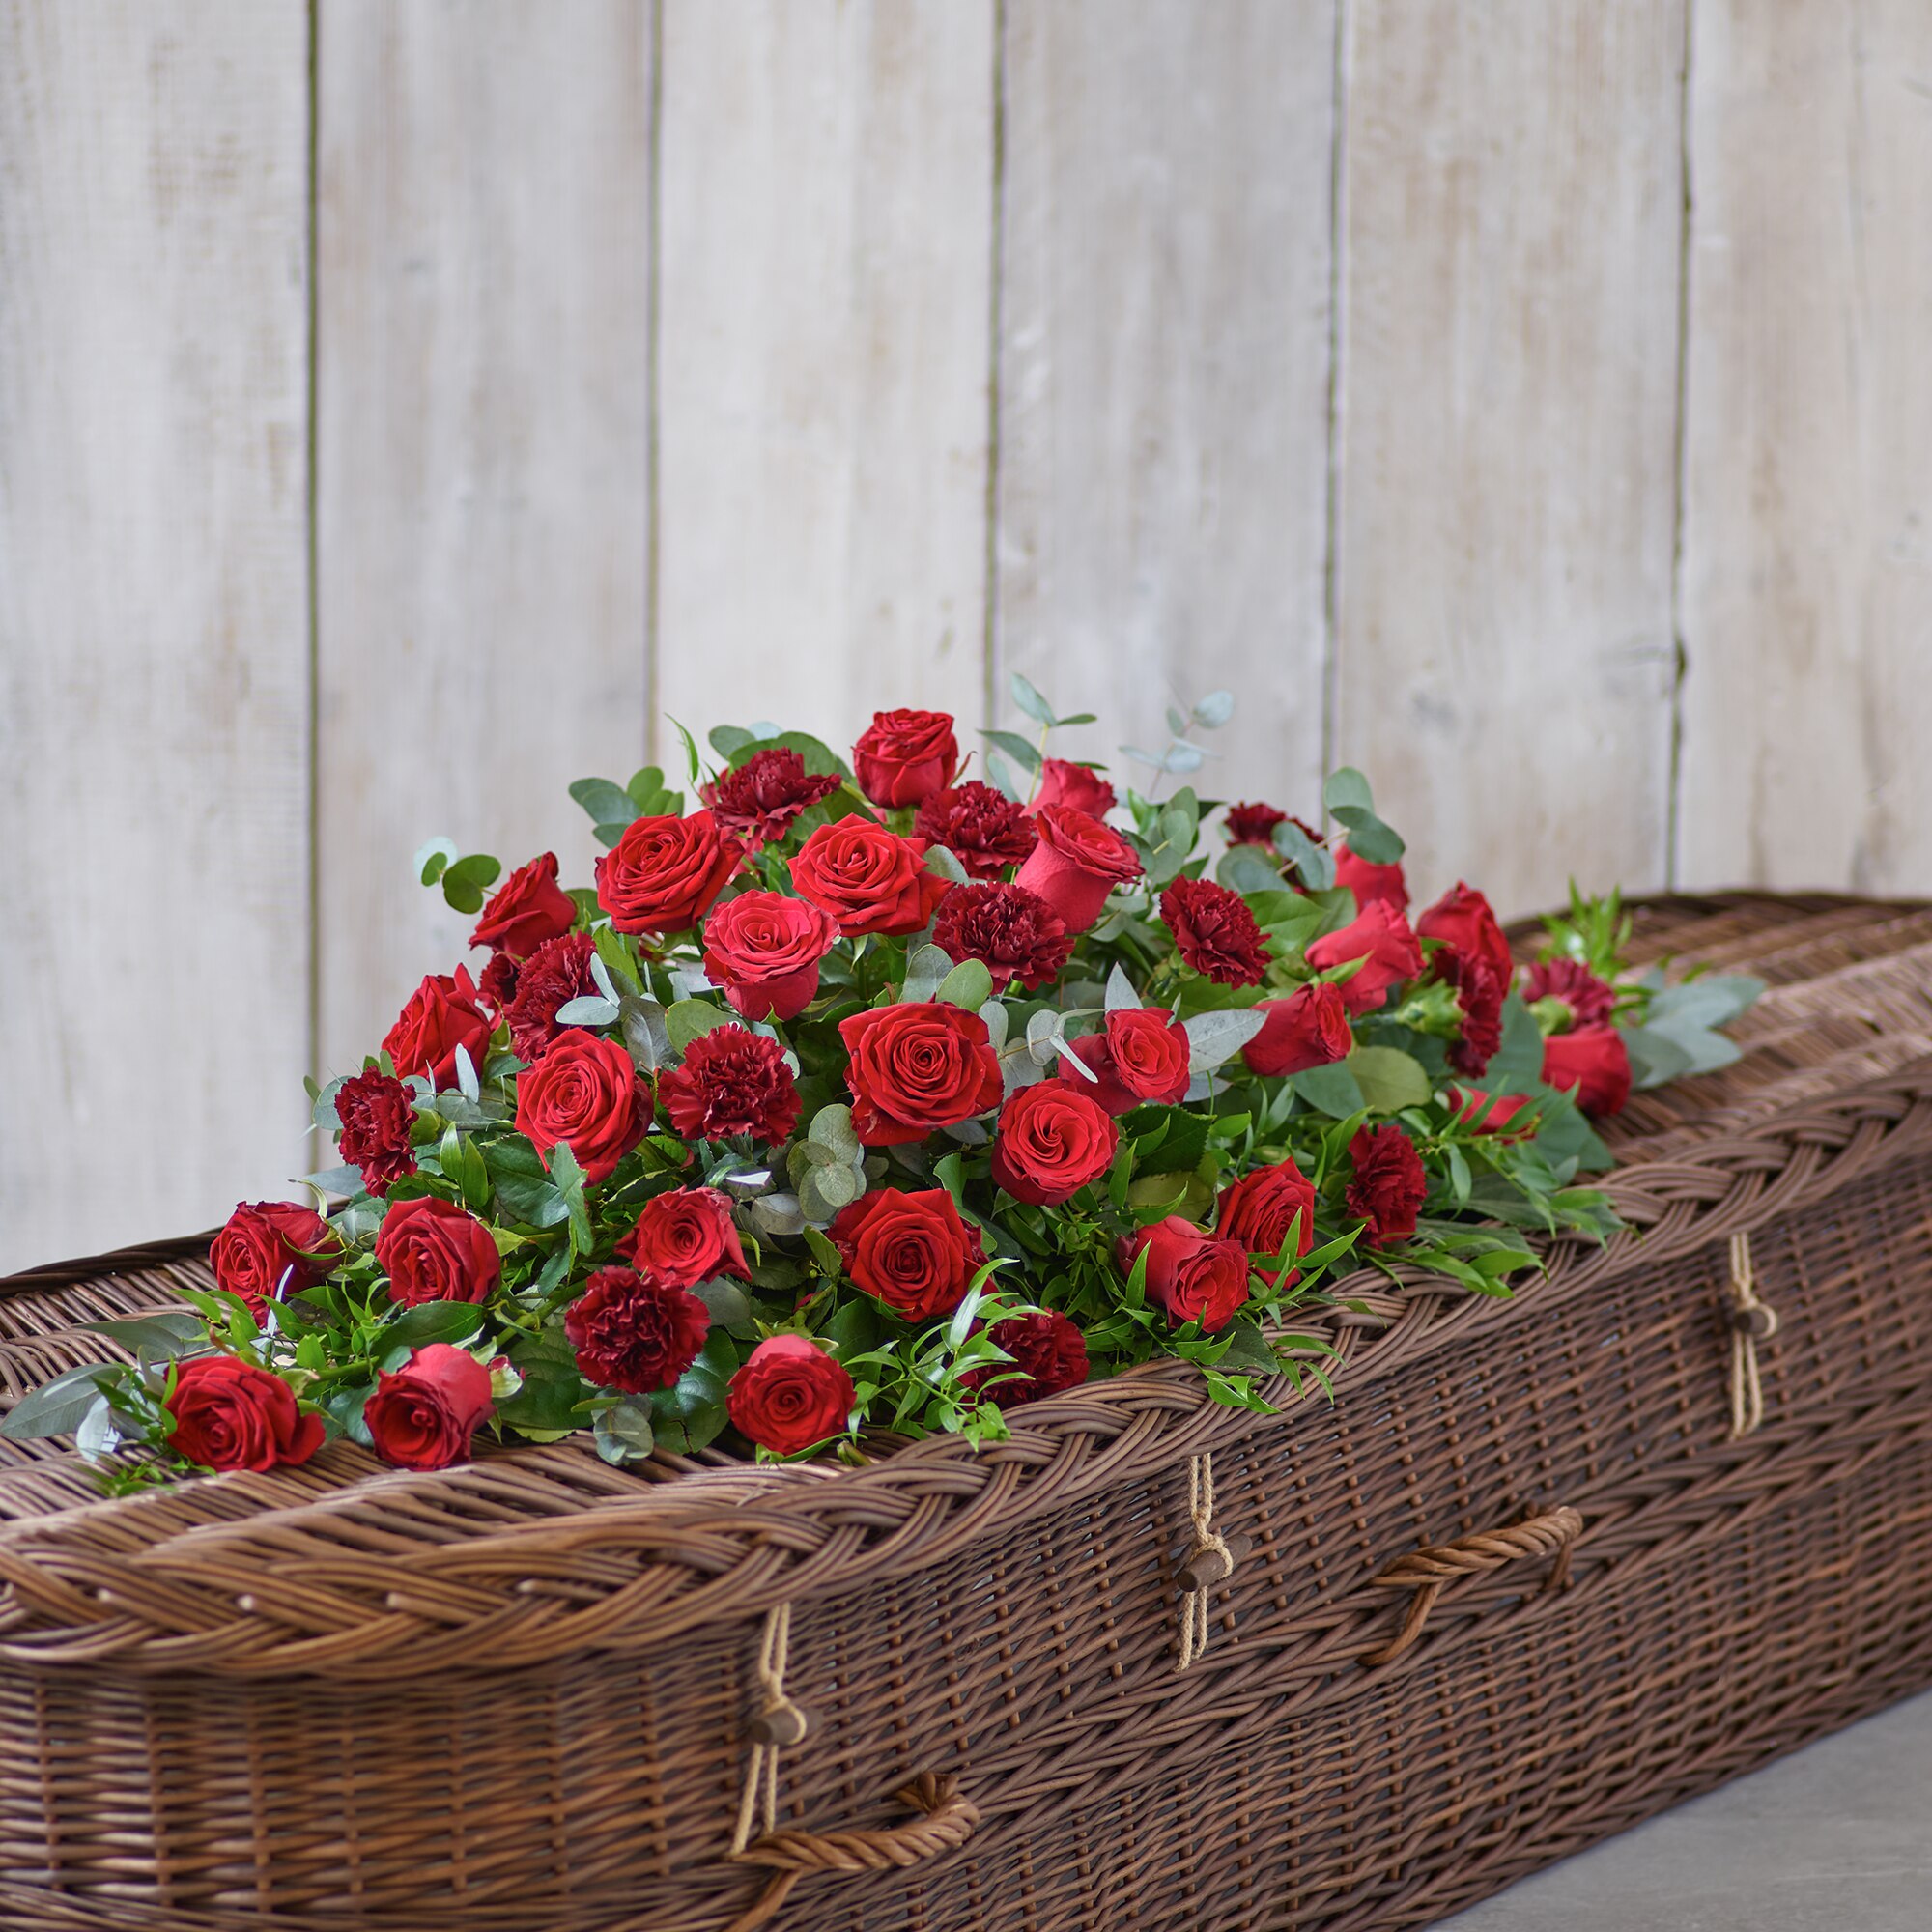 Rose and Carnation Casket Spray - Red Flower Arrangement